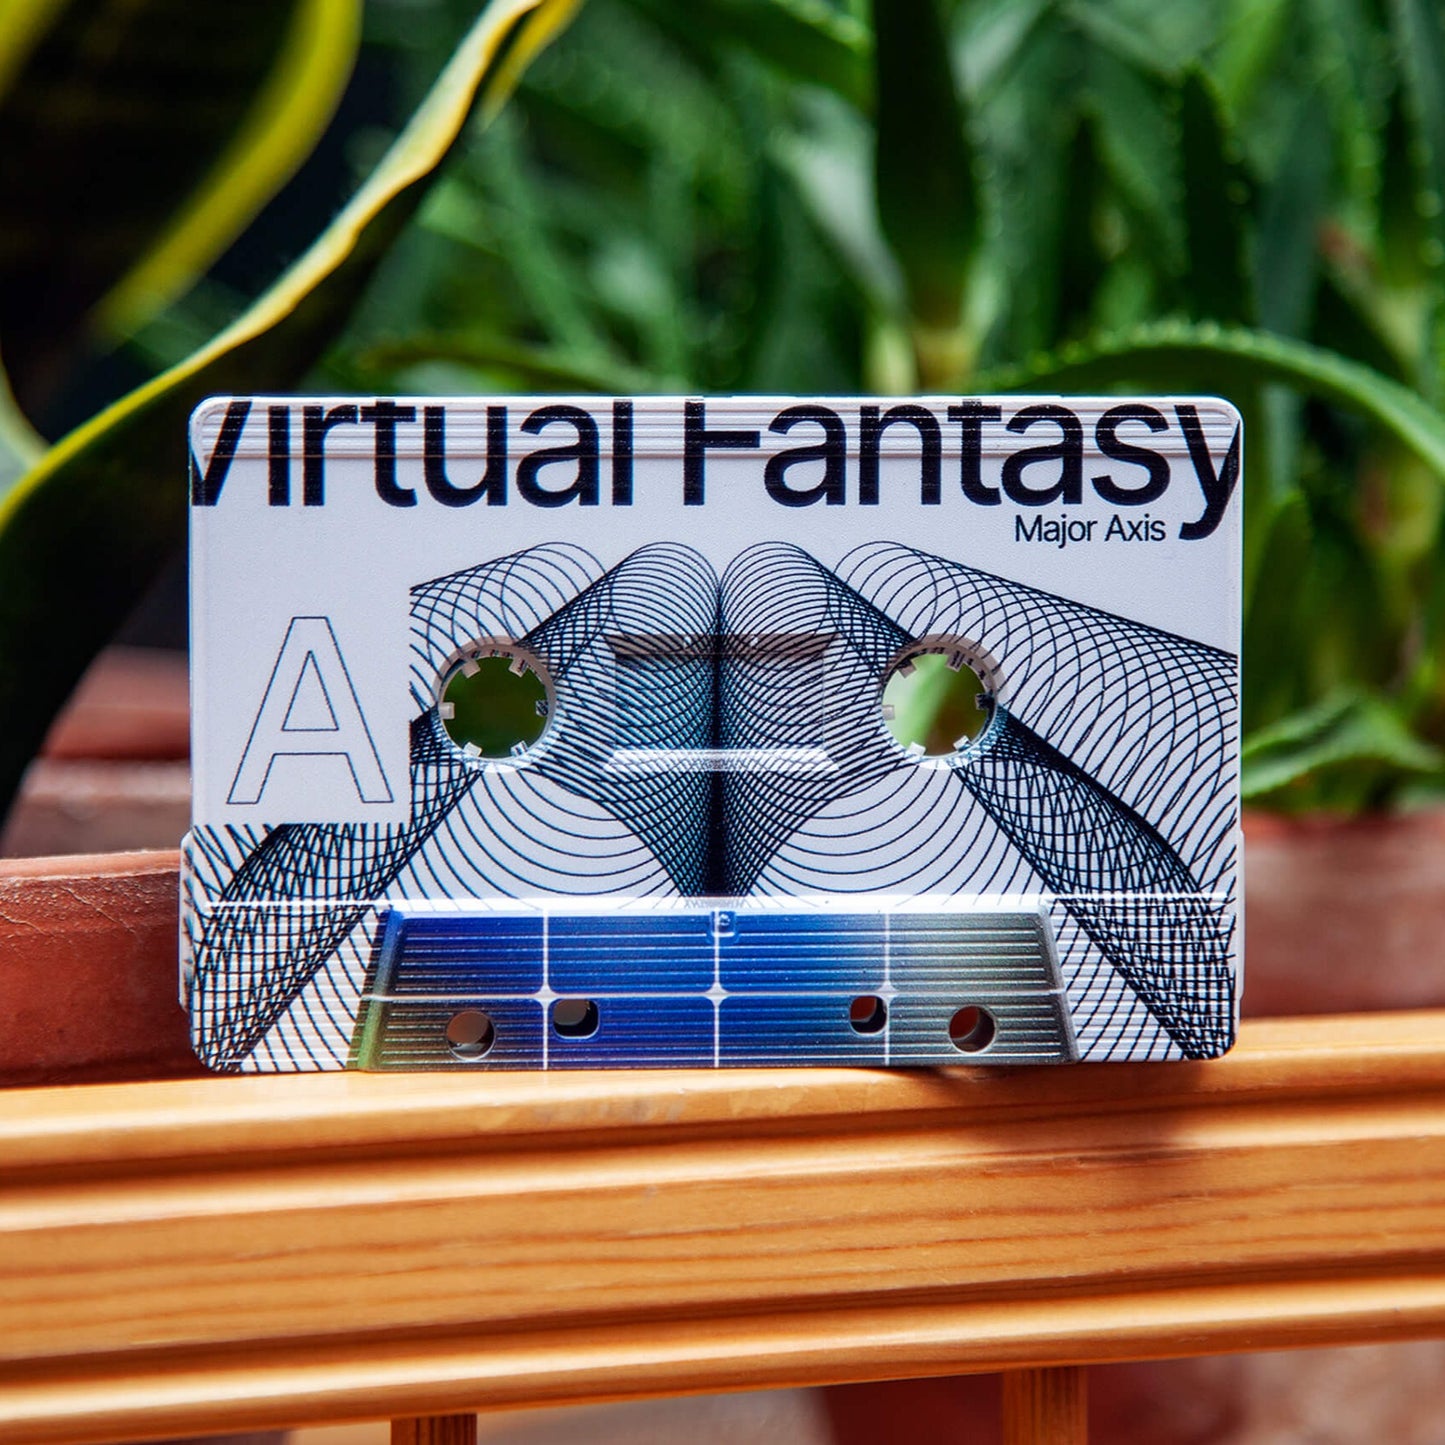 Major Axis - Virtual Fantasy cassette